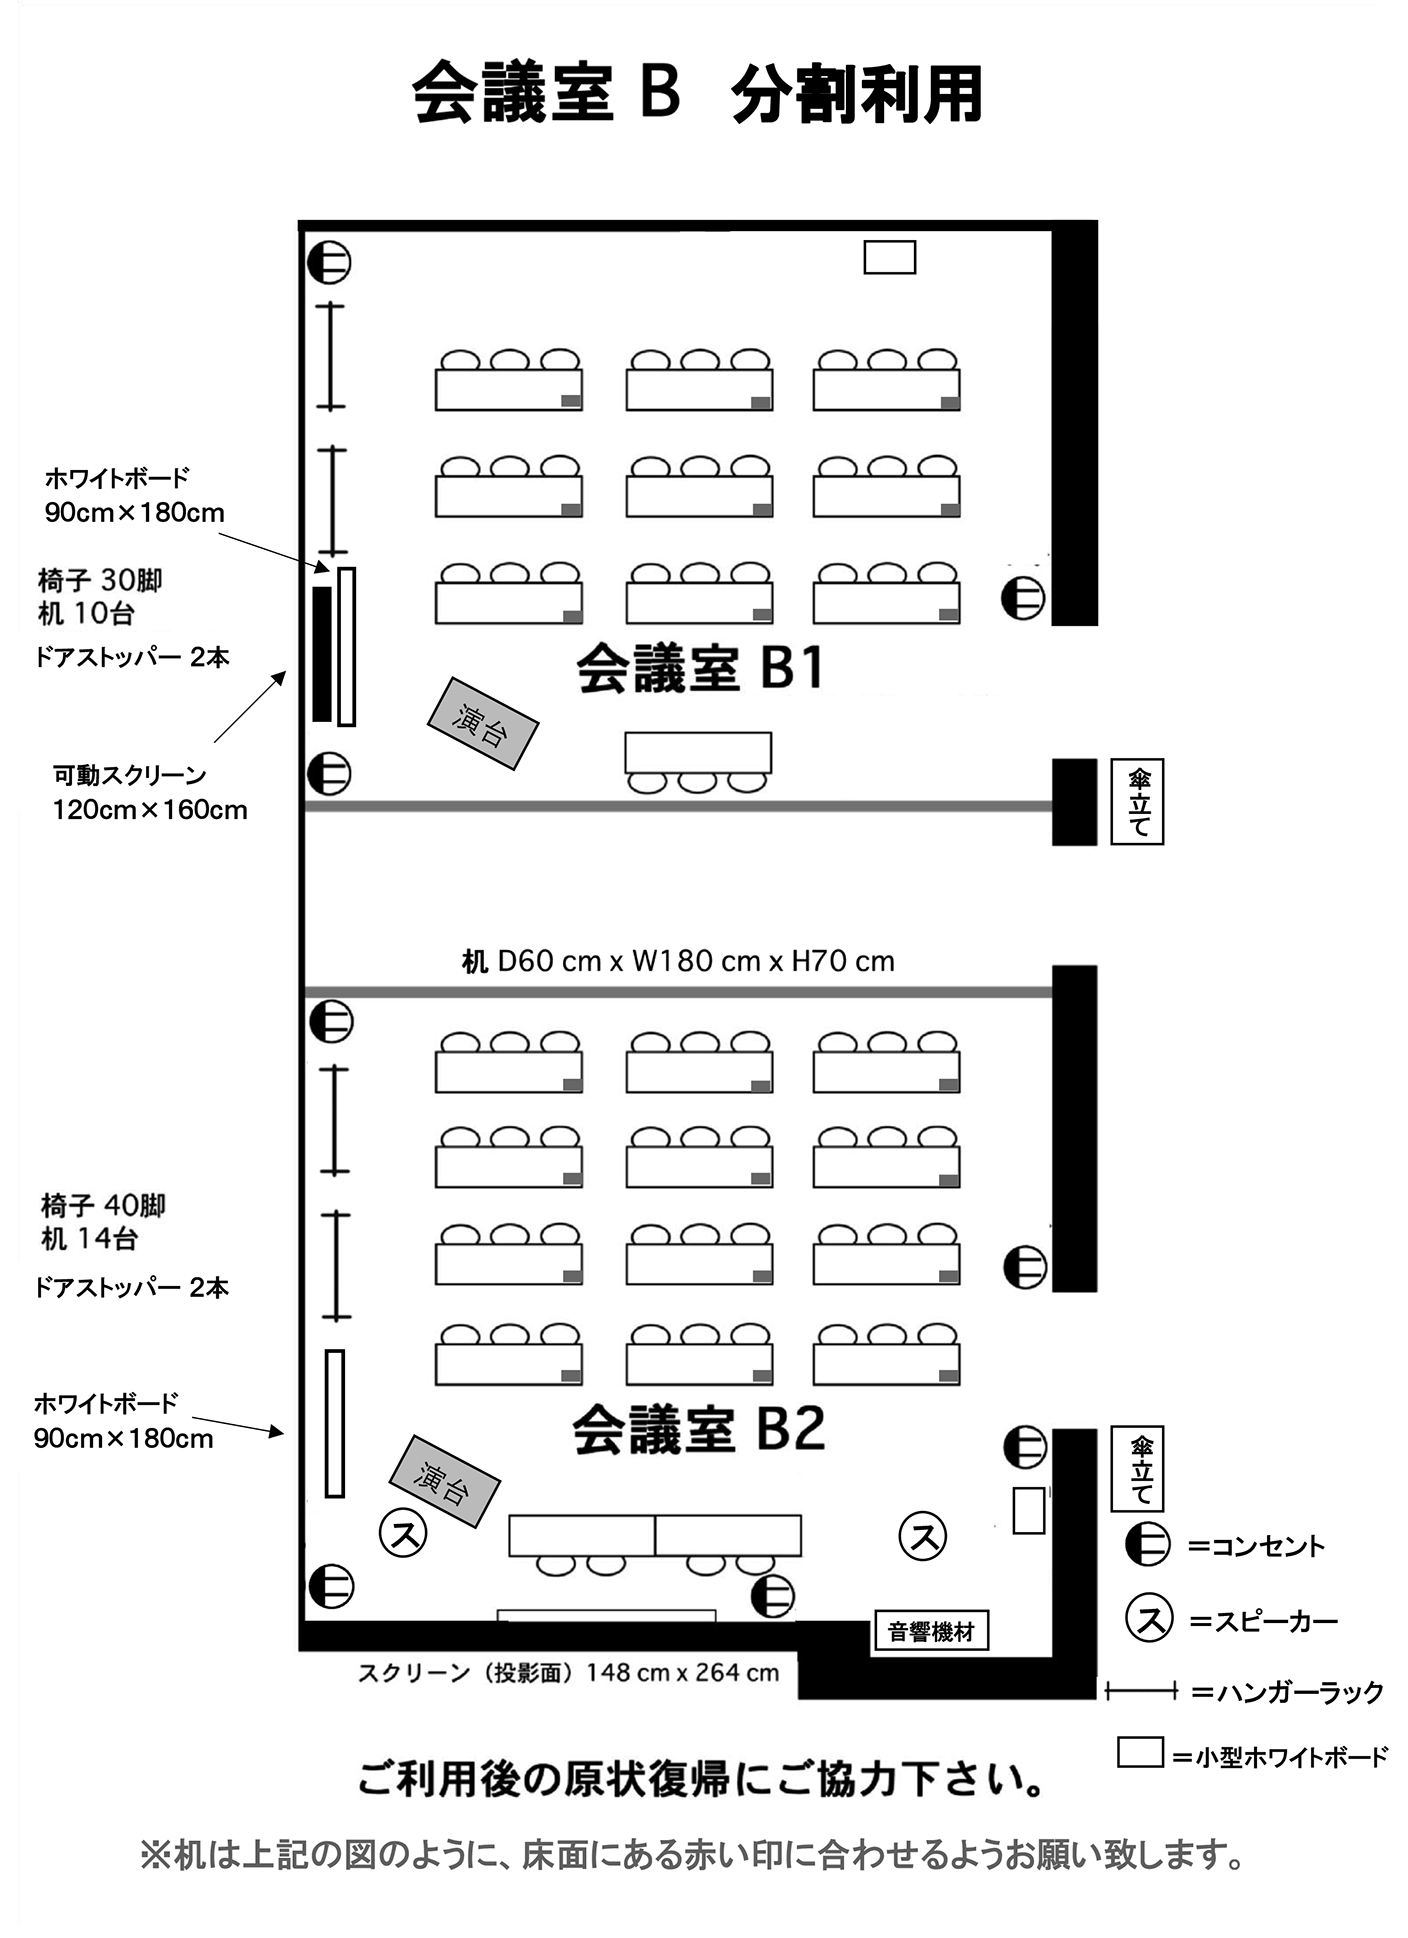 会議室B1B2図面